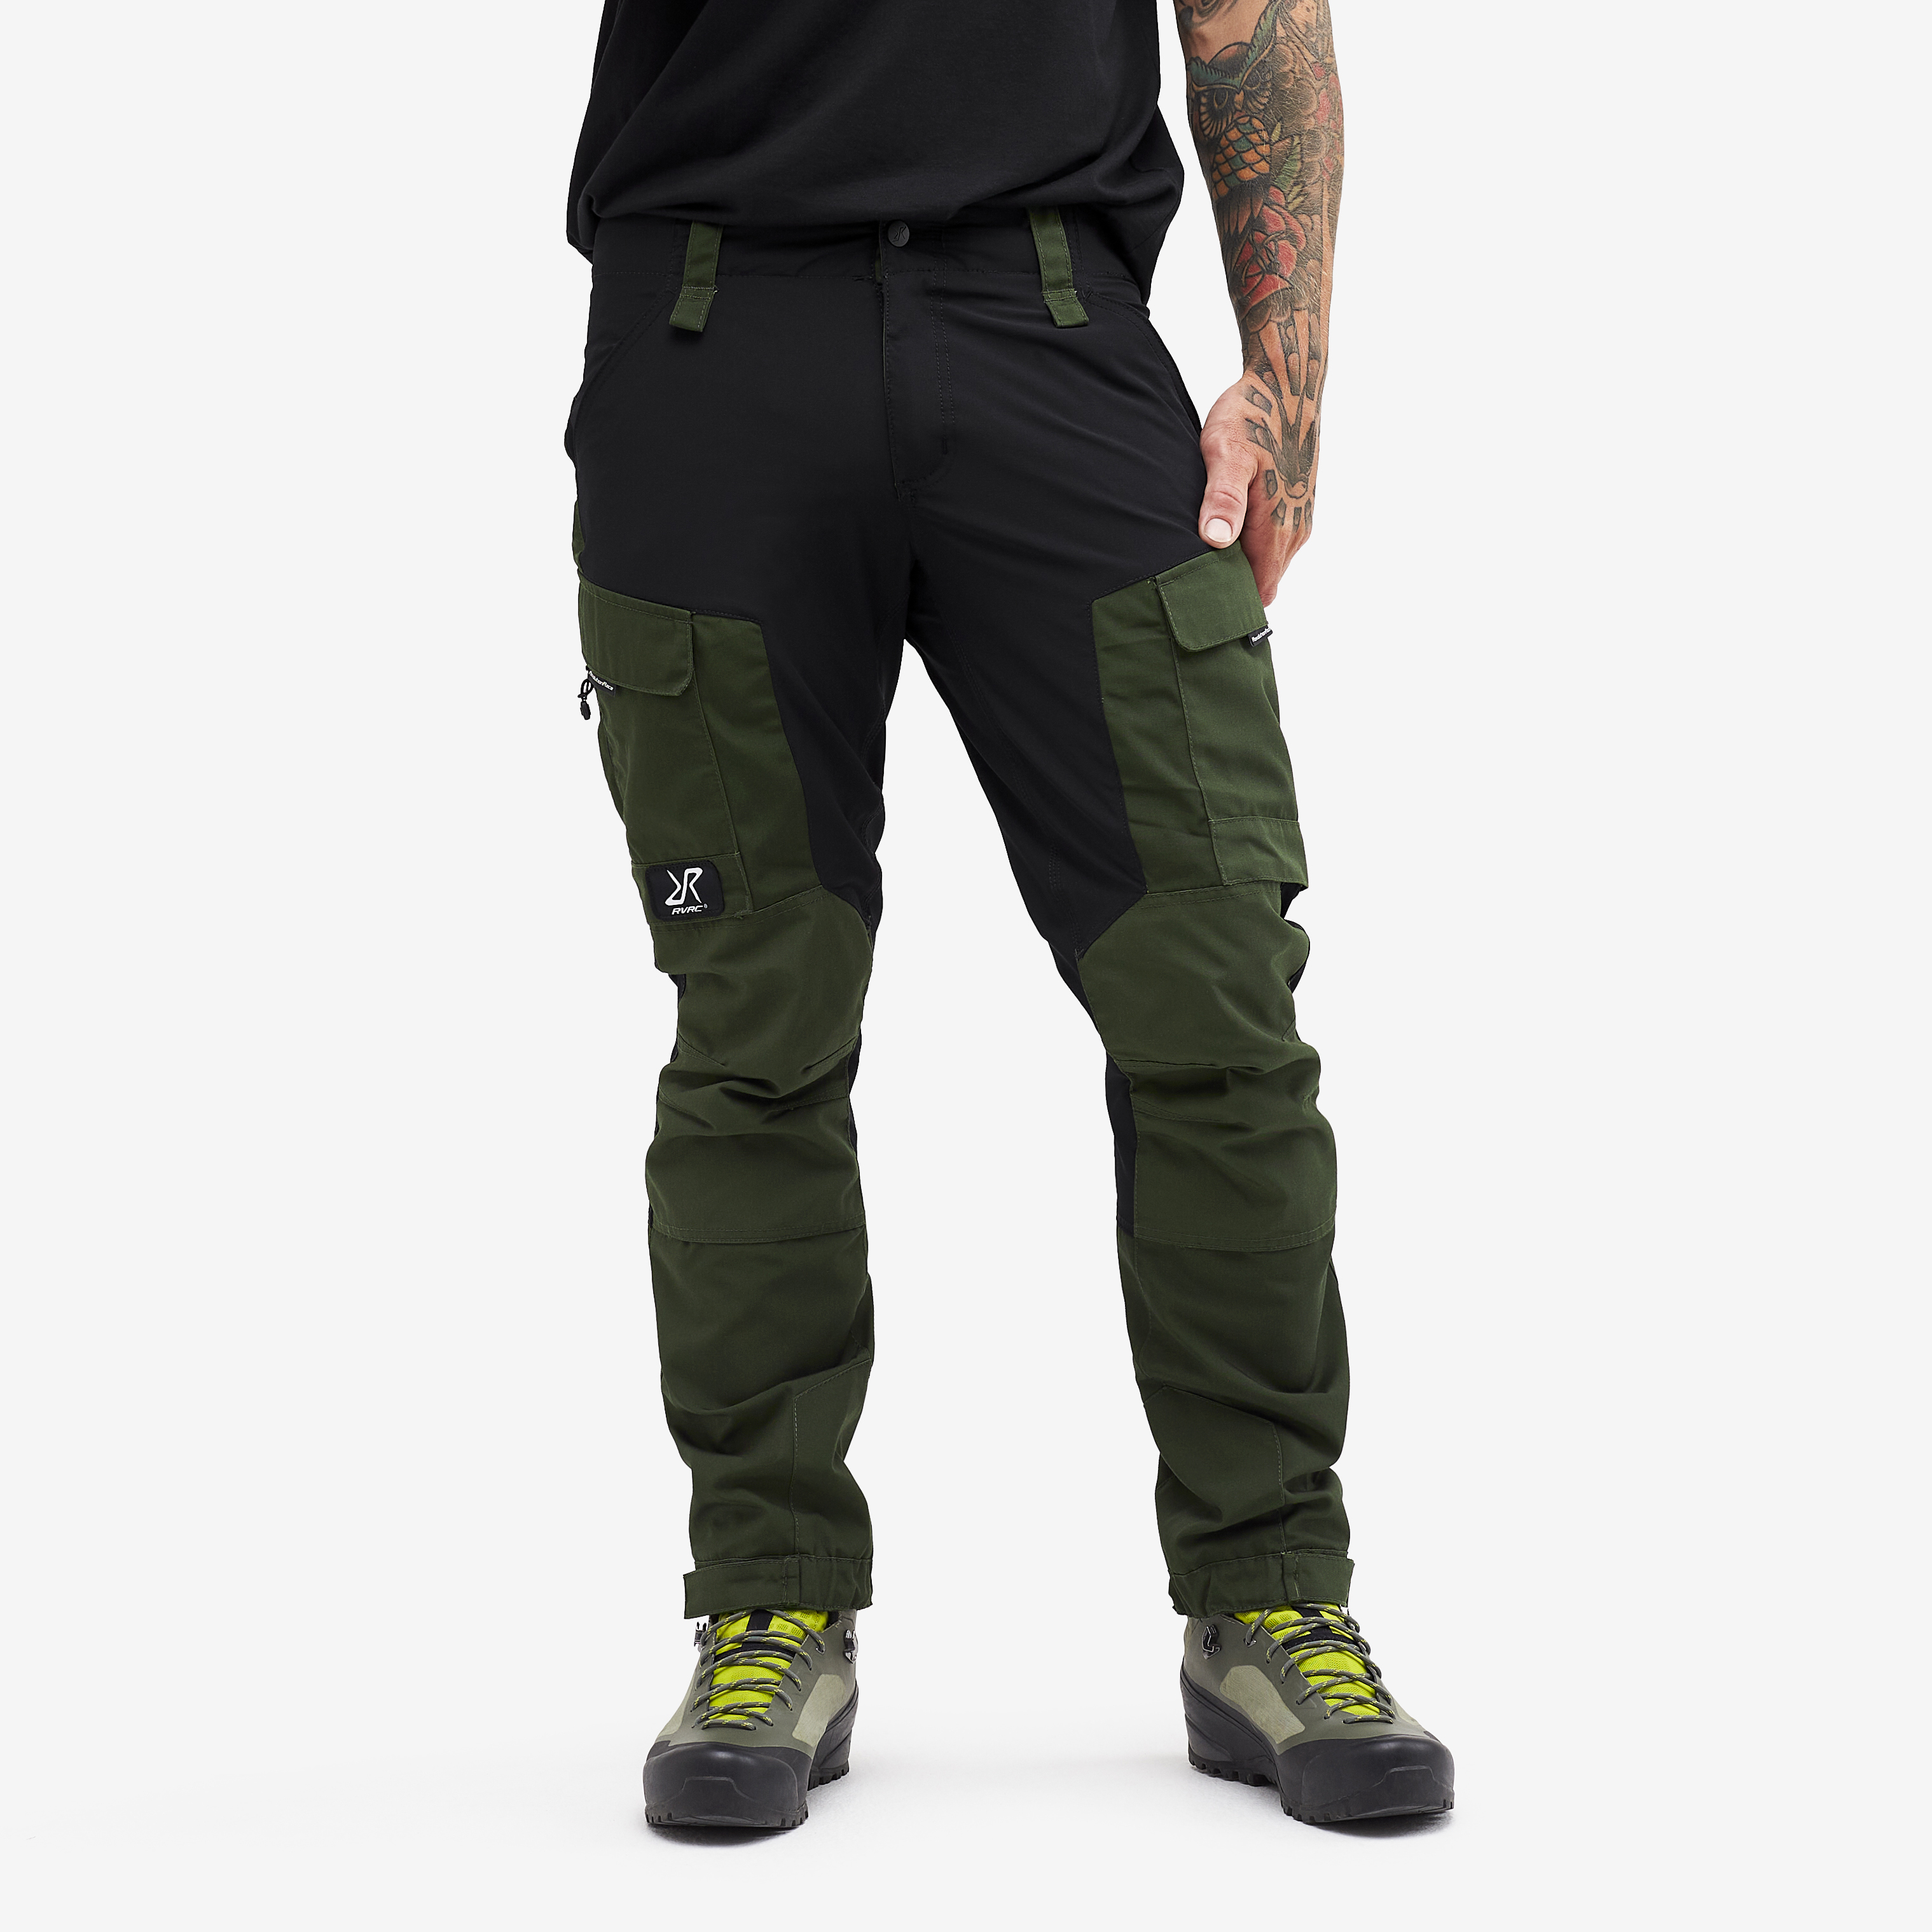 RVRC GP Short spodnie outdoorowe męskie zielony